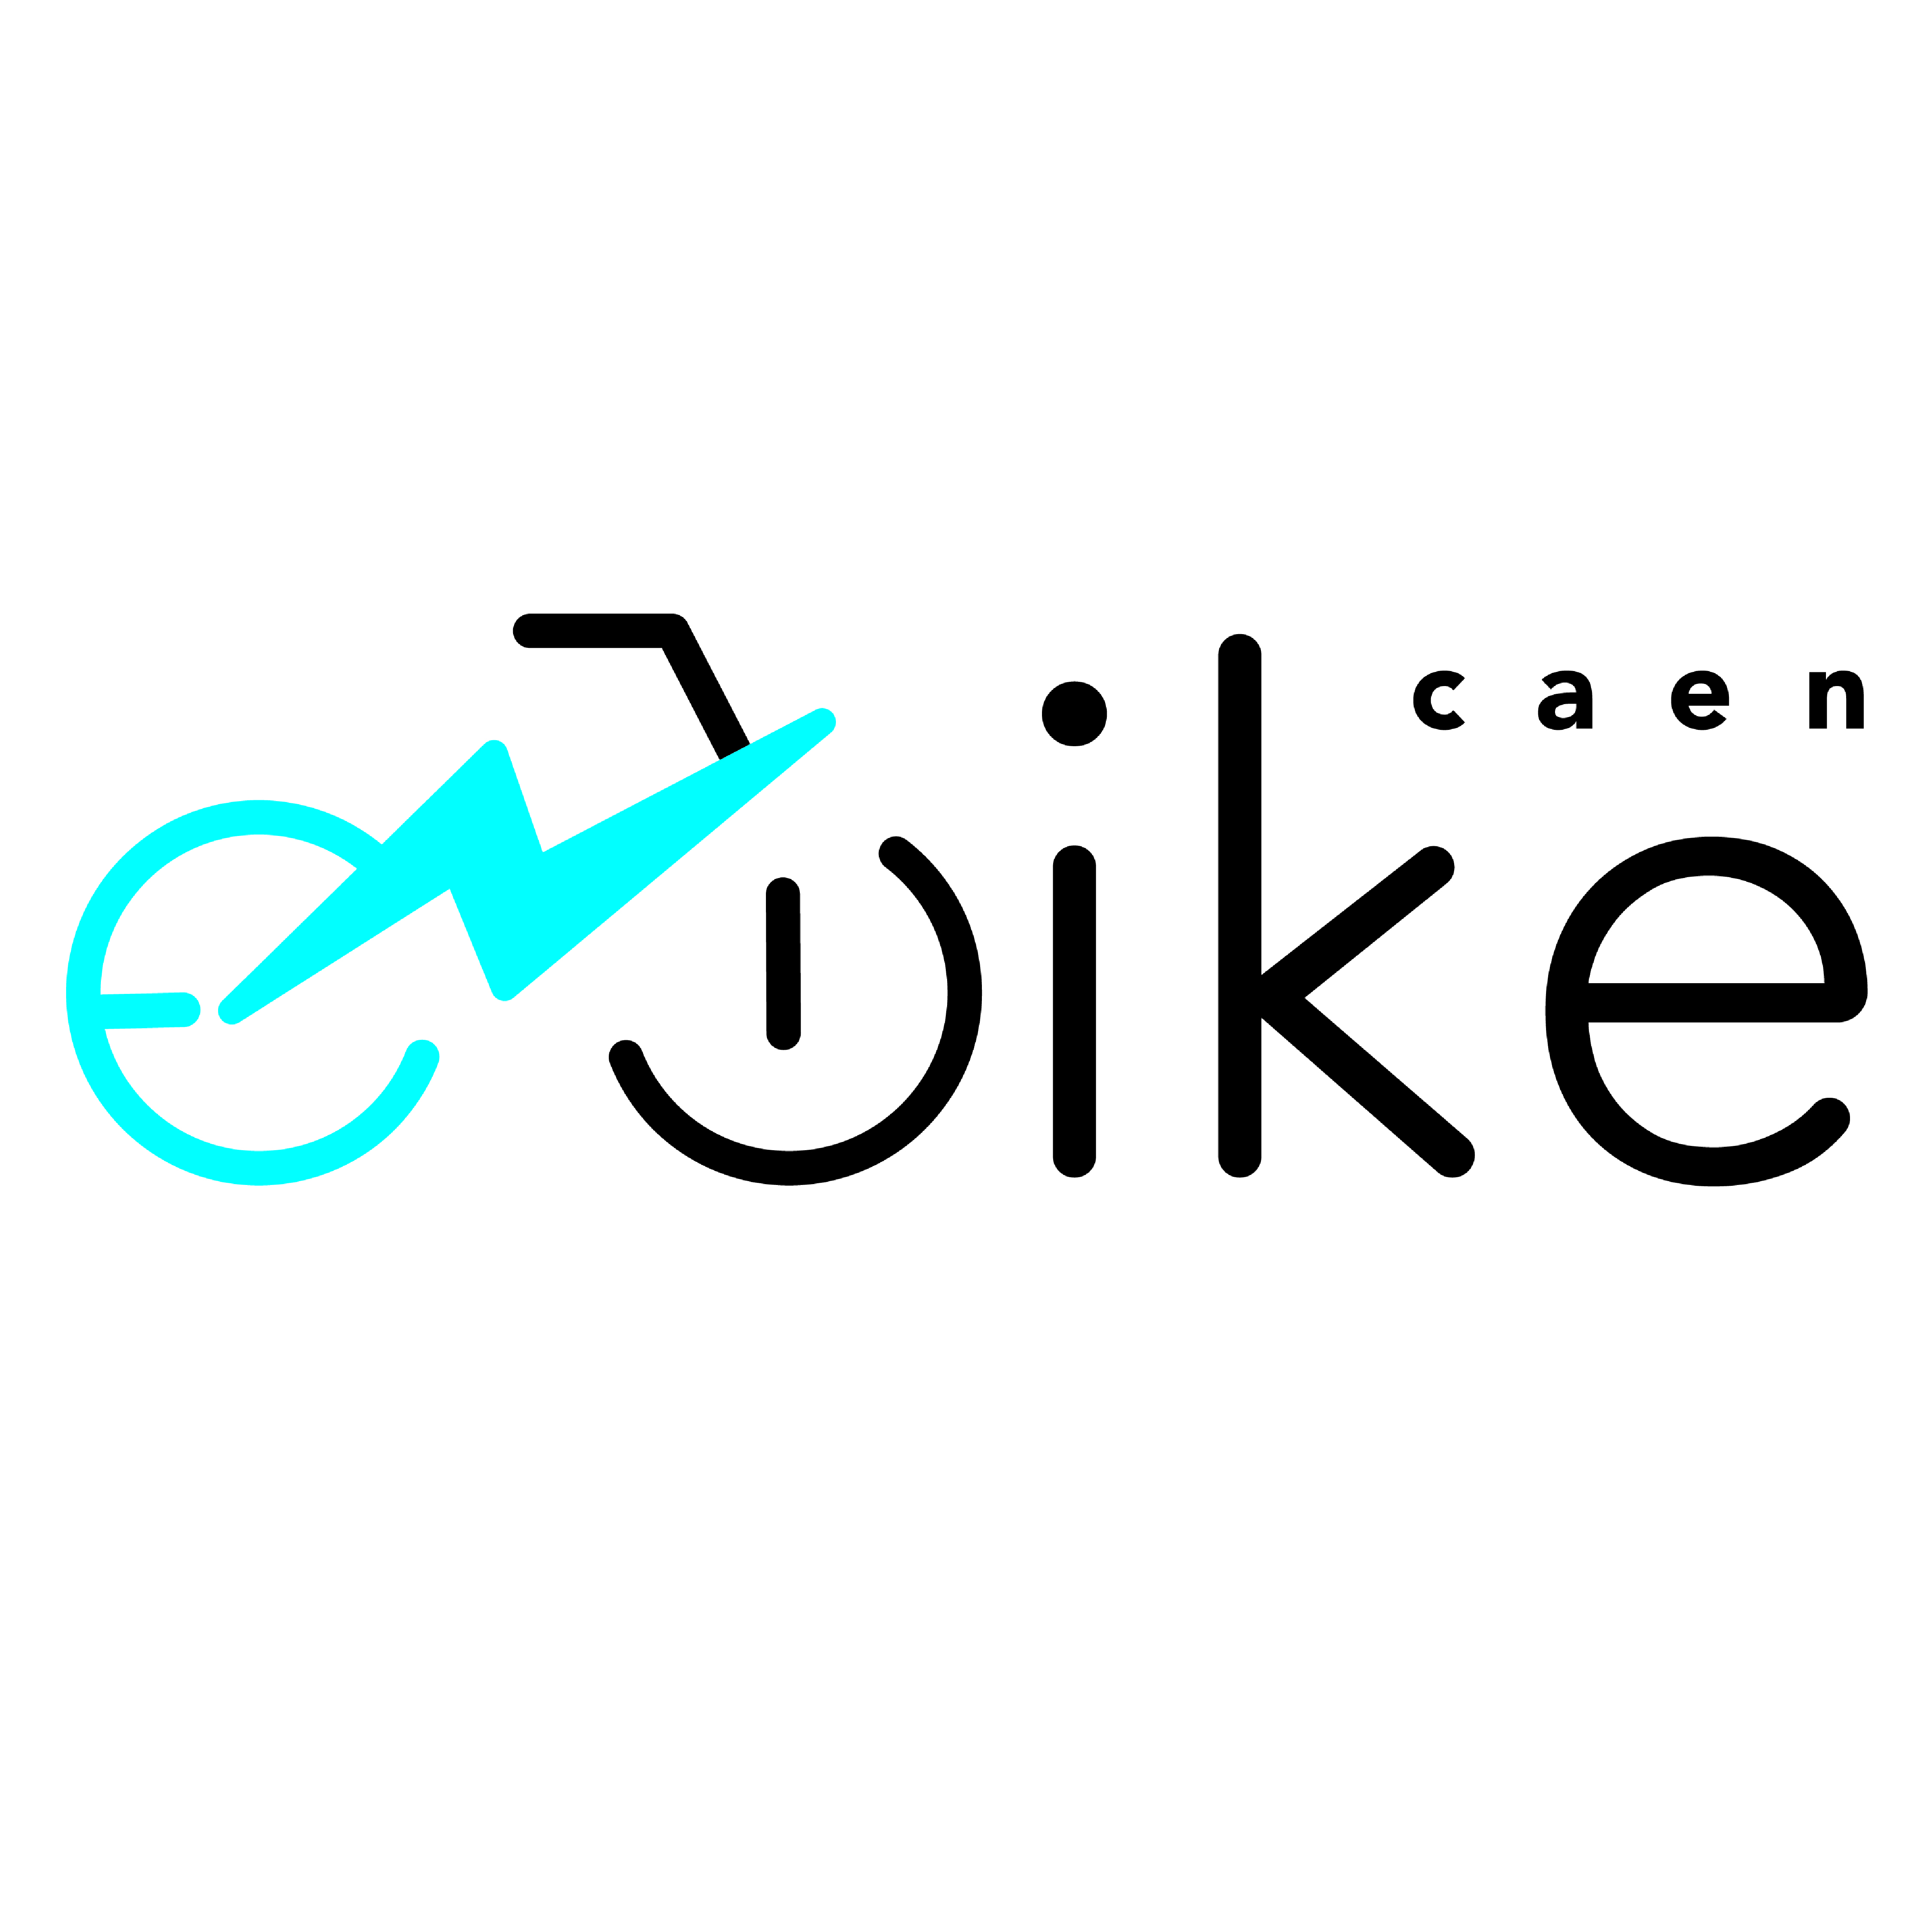 E-Bike Caen, nouvelle solution de mobilité du Groupe